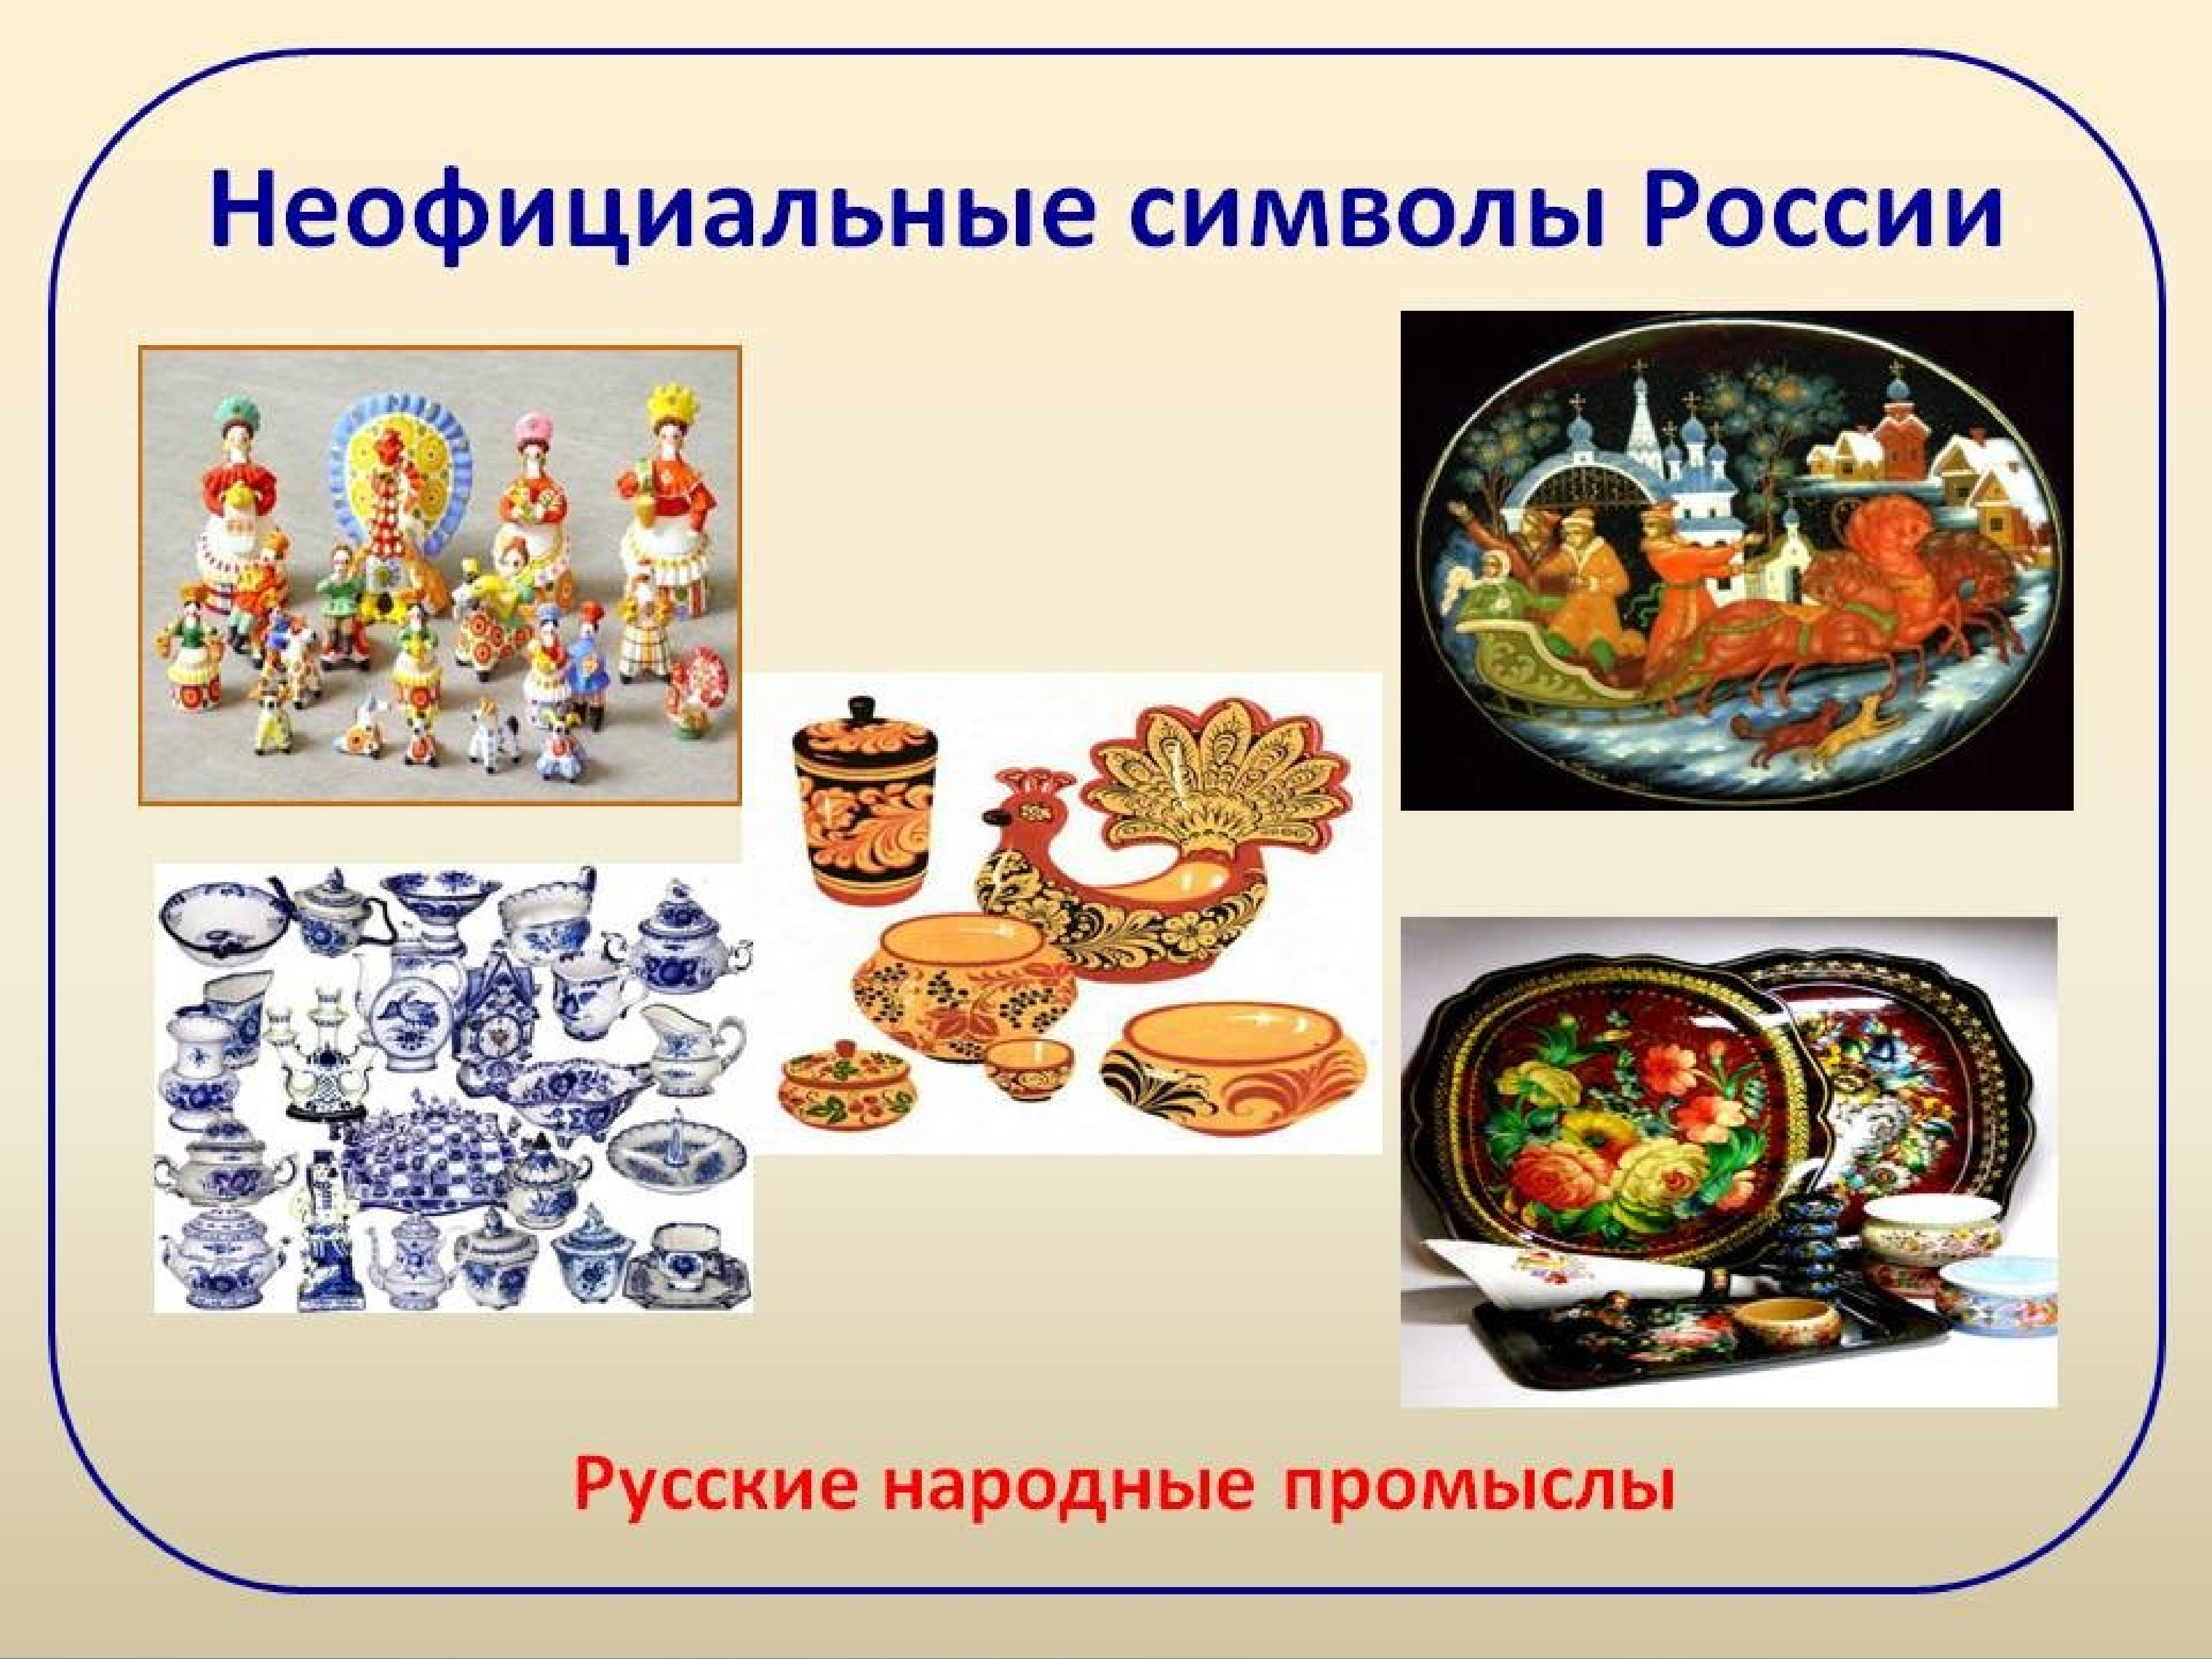 Неофициальные народные символы России